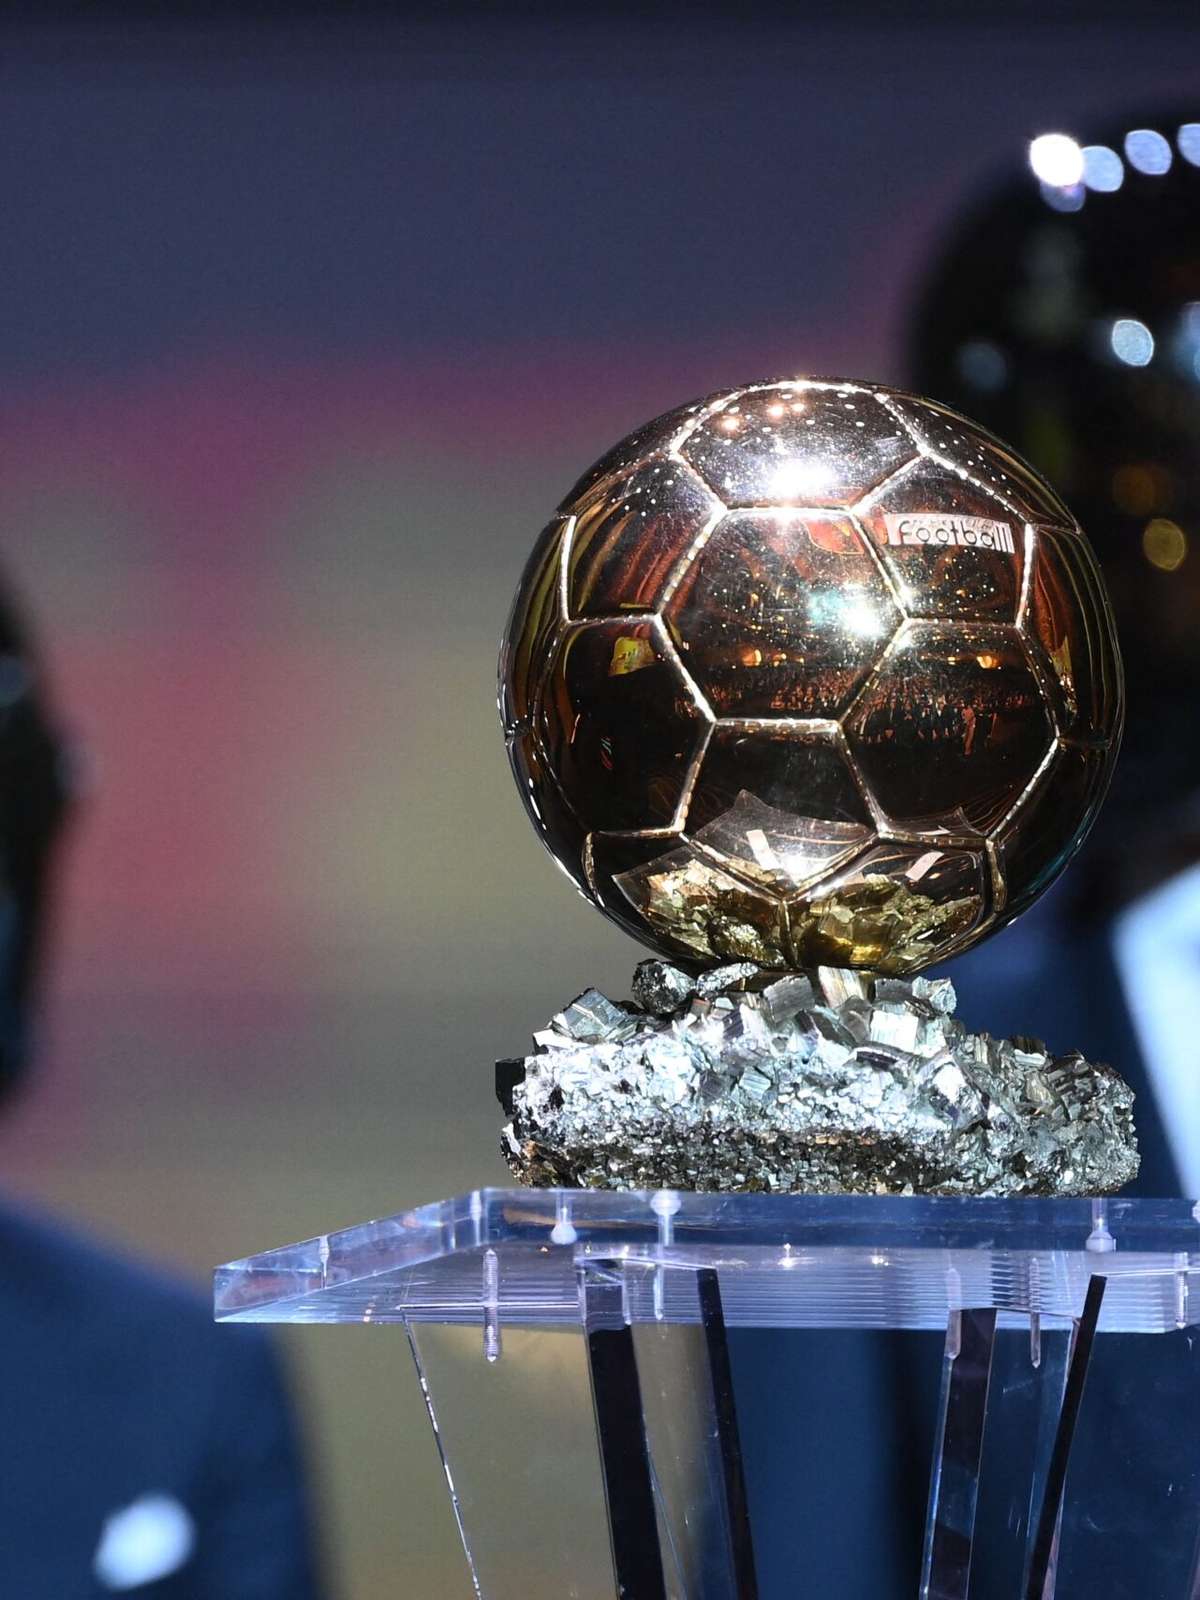 Com Messi e domínio inglês, conheça os 30 concorrentes à Bola de Ouro -  Placar - O futebol sem barreiras para você